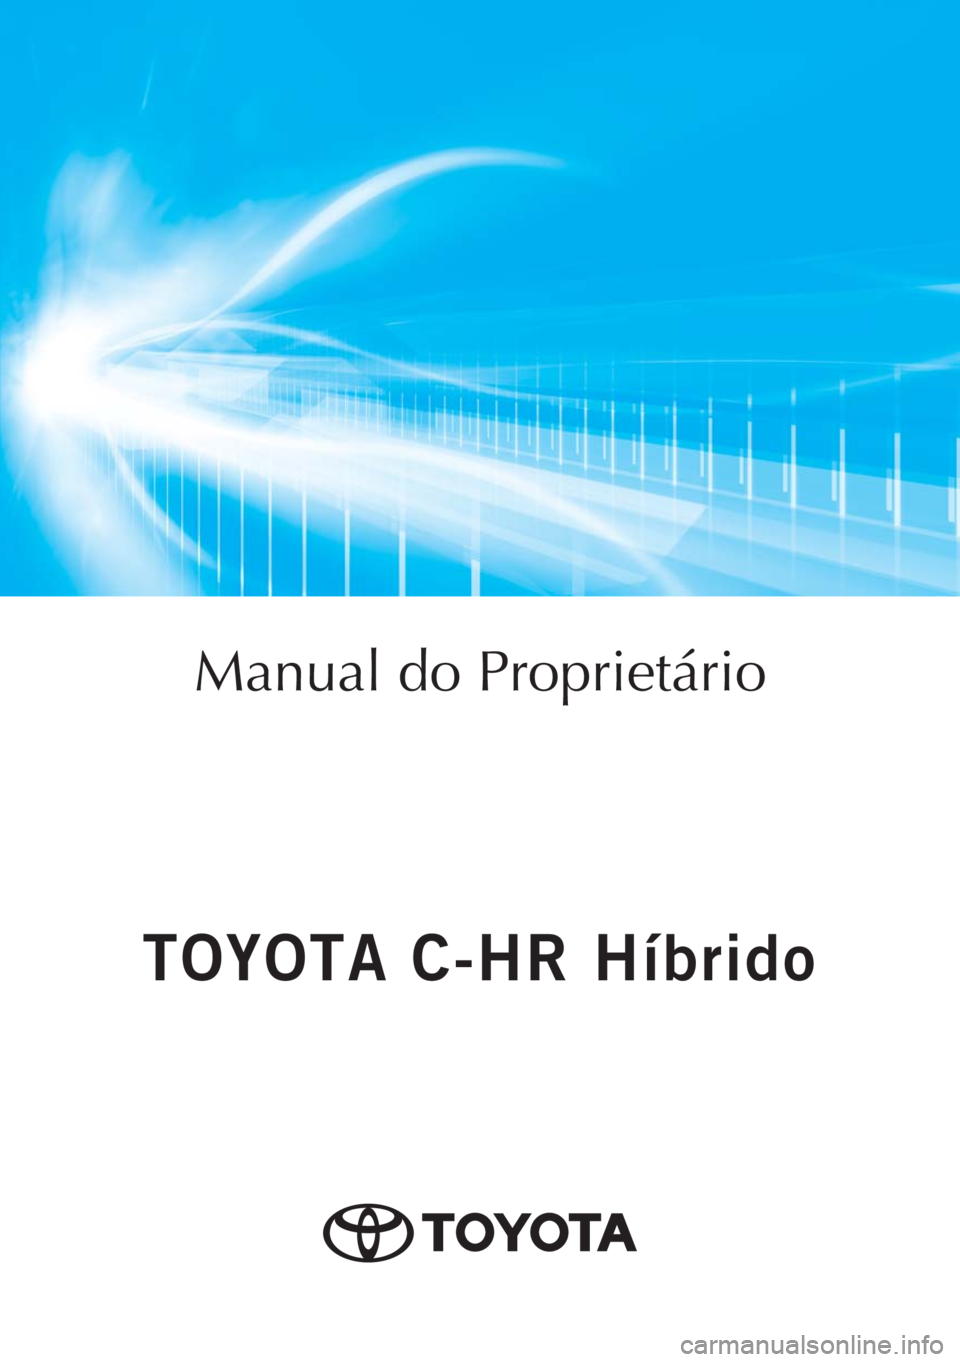 TOYOTA C-HR 2018  Manual de utilização (in Portuguese) Manual do Proprietário
Mod. OM10576PT
Public. N.º OM10576E
ORGAL-PORTOToyota Caetano Portugal, S.A.
TOYOTA C-HR Híbrido
TOYOTA C-HR Híbrido 